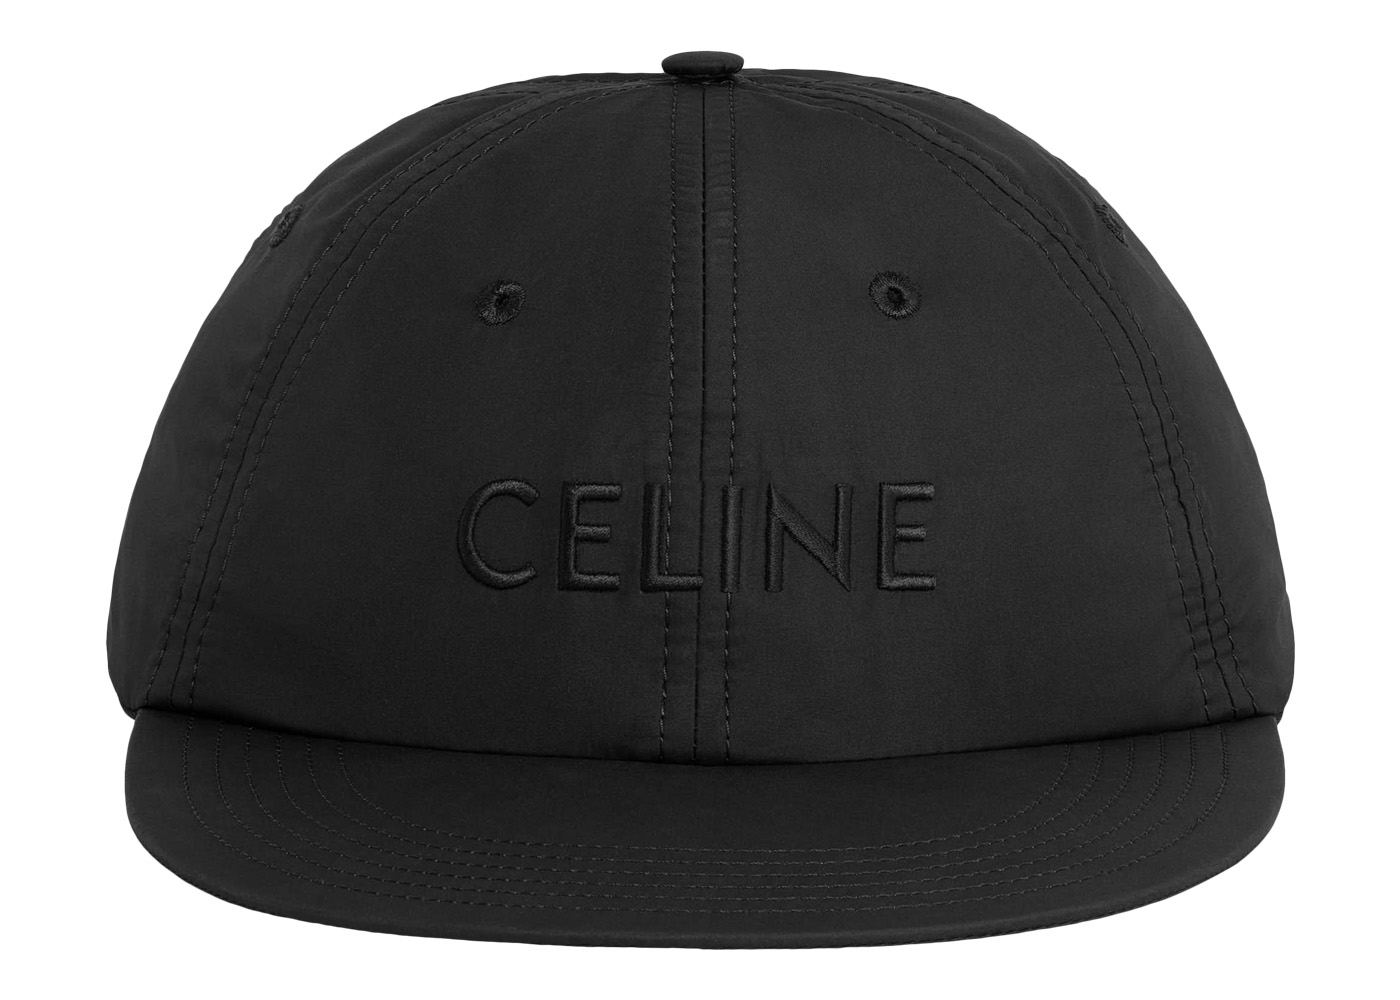 Celine University Baseball Cap Navy/Cream